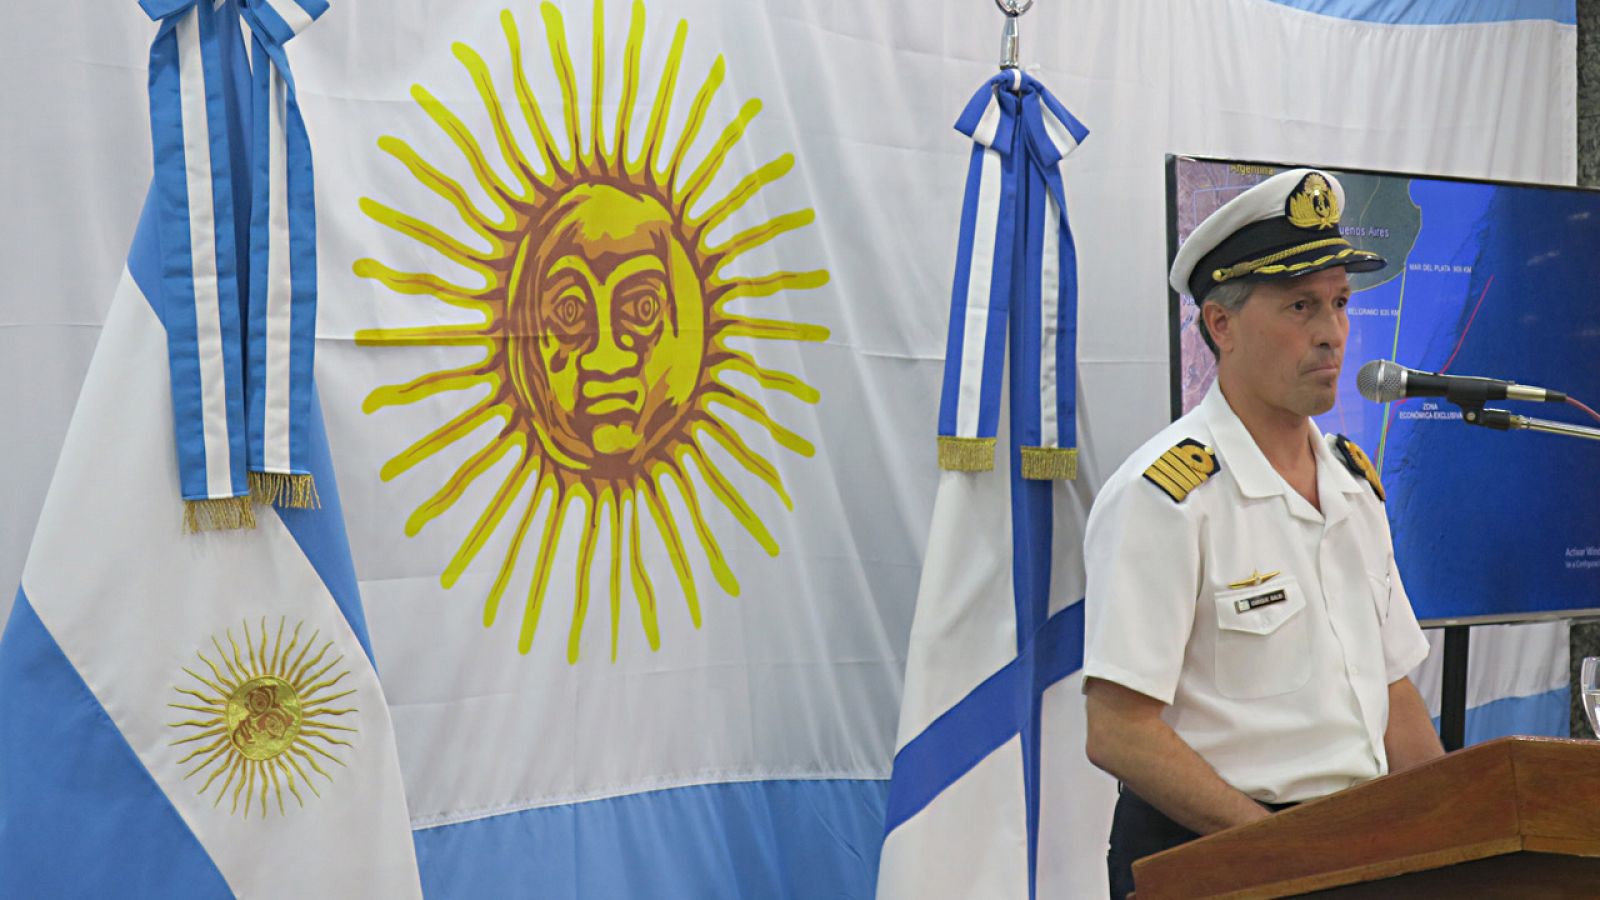 El portavoz de la Armada argentina, capitán Enrique Balbi, informa a los medios de comunicación sobre el submarino desparecido